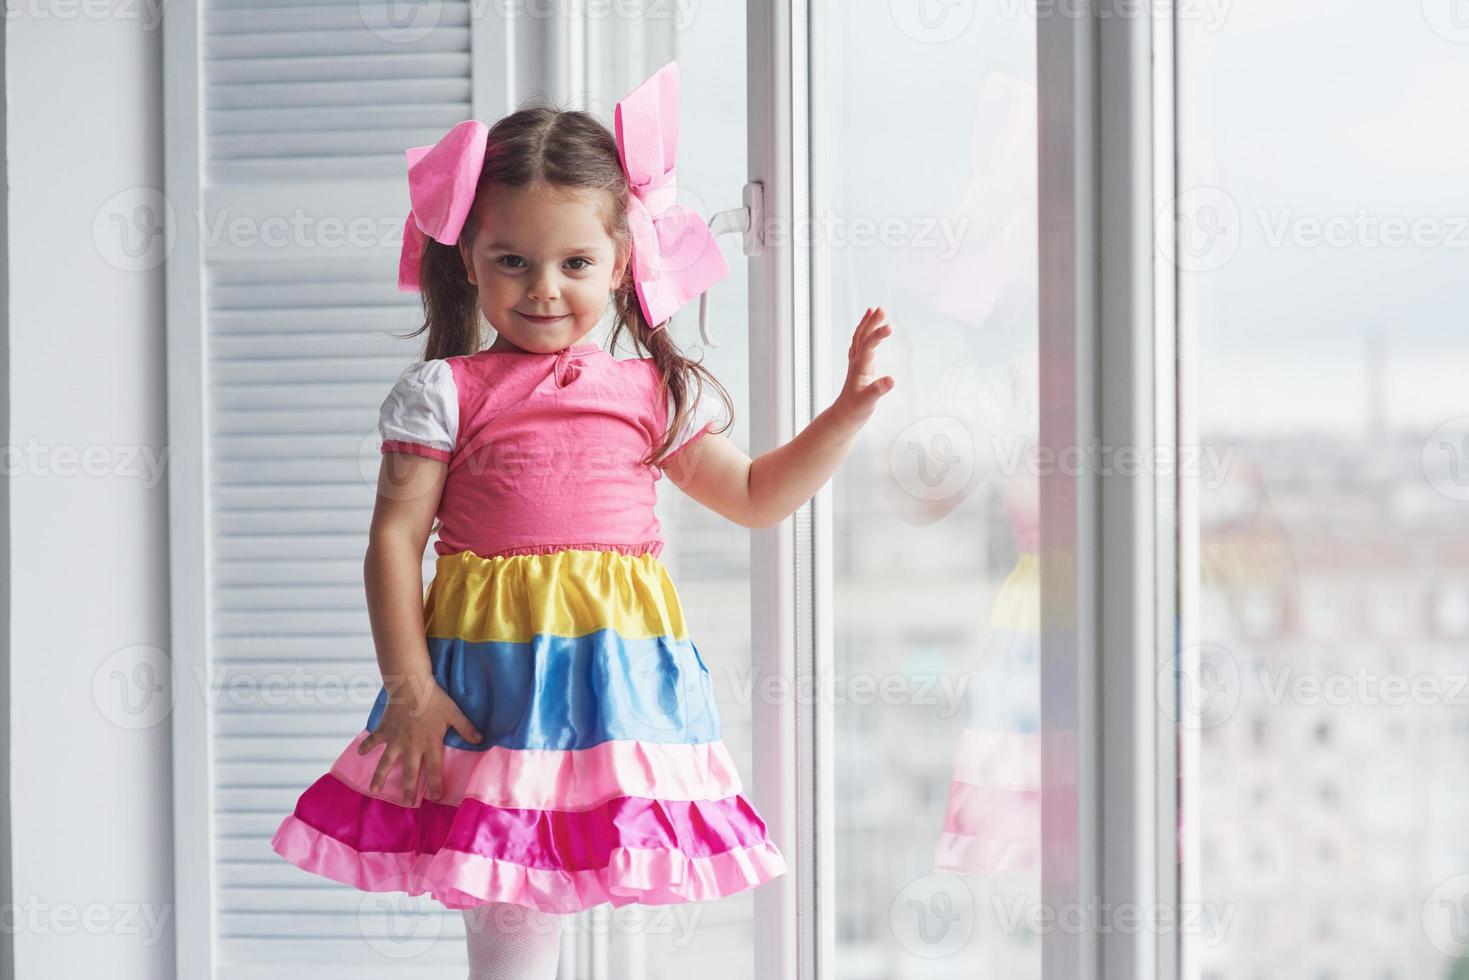 chica en el vestido colorido tocando el cristal de la ventana y mirando a la cámara foto